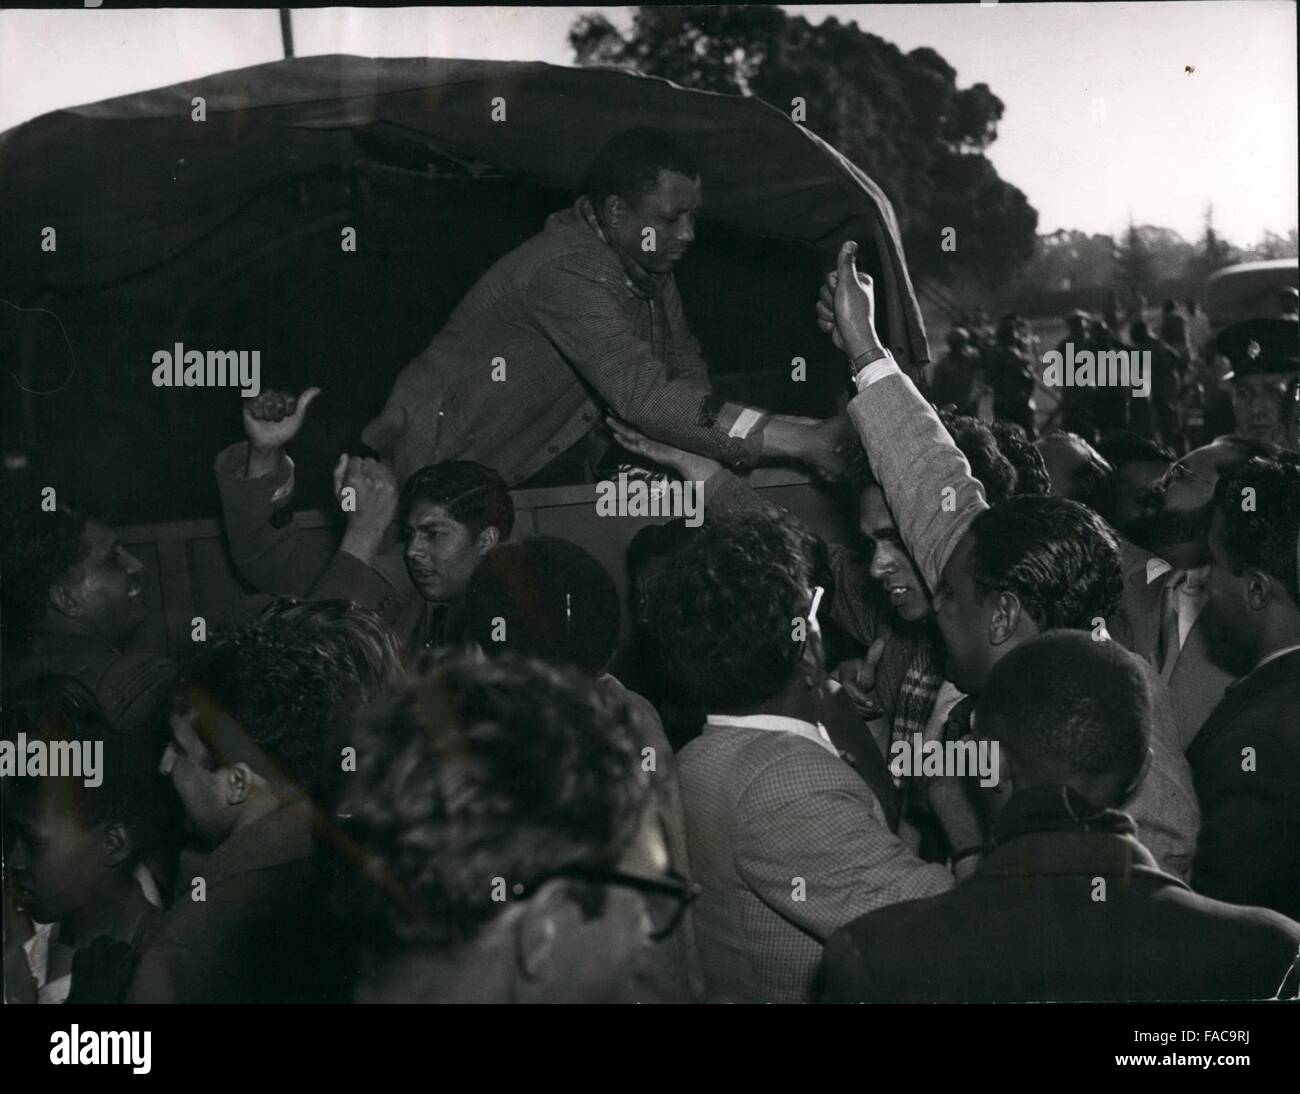 1972: Walter Sisulu, Generalsekretär des African National Congress, nach der Verhaftung in Boksburg Lage. Wegen der großen Zahl der Sympathisanten drängen sich um ihn herum wurde er zu einem geschlossenen van entfernt, nachdem dieses Bild aufgenommen wurde. © Keystone Bilder USA/ZUMAPRESS.com/Alamy Live-Nachrichten Stockfoto